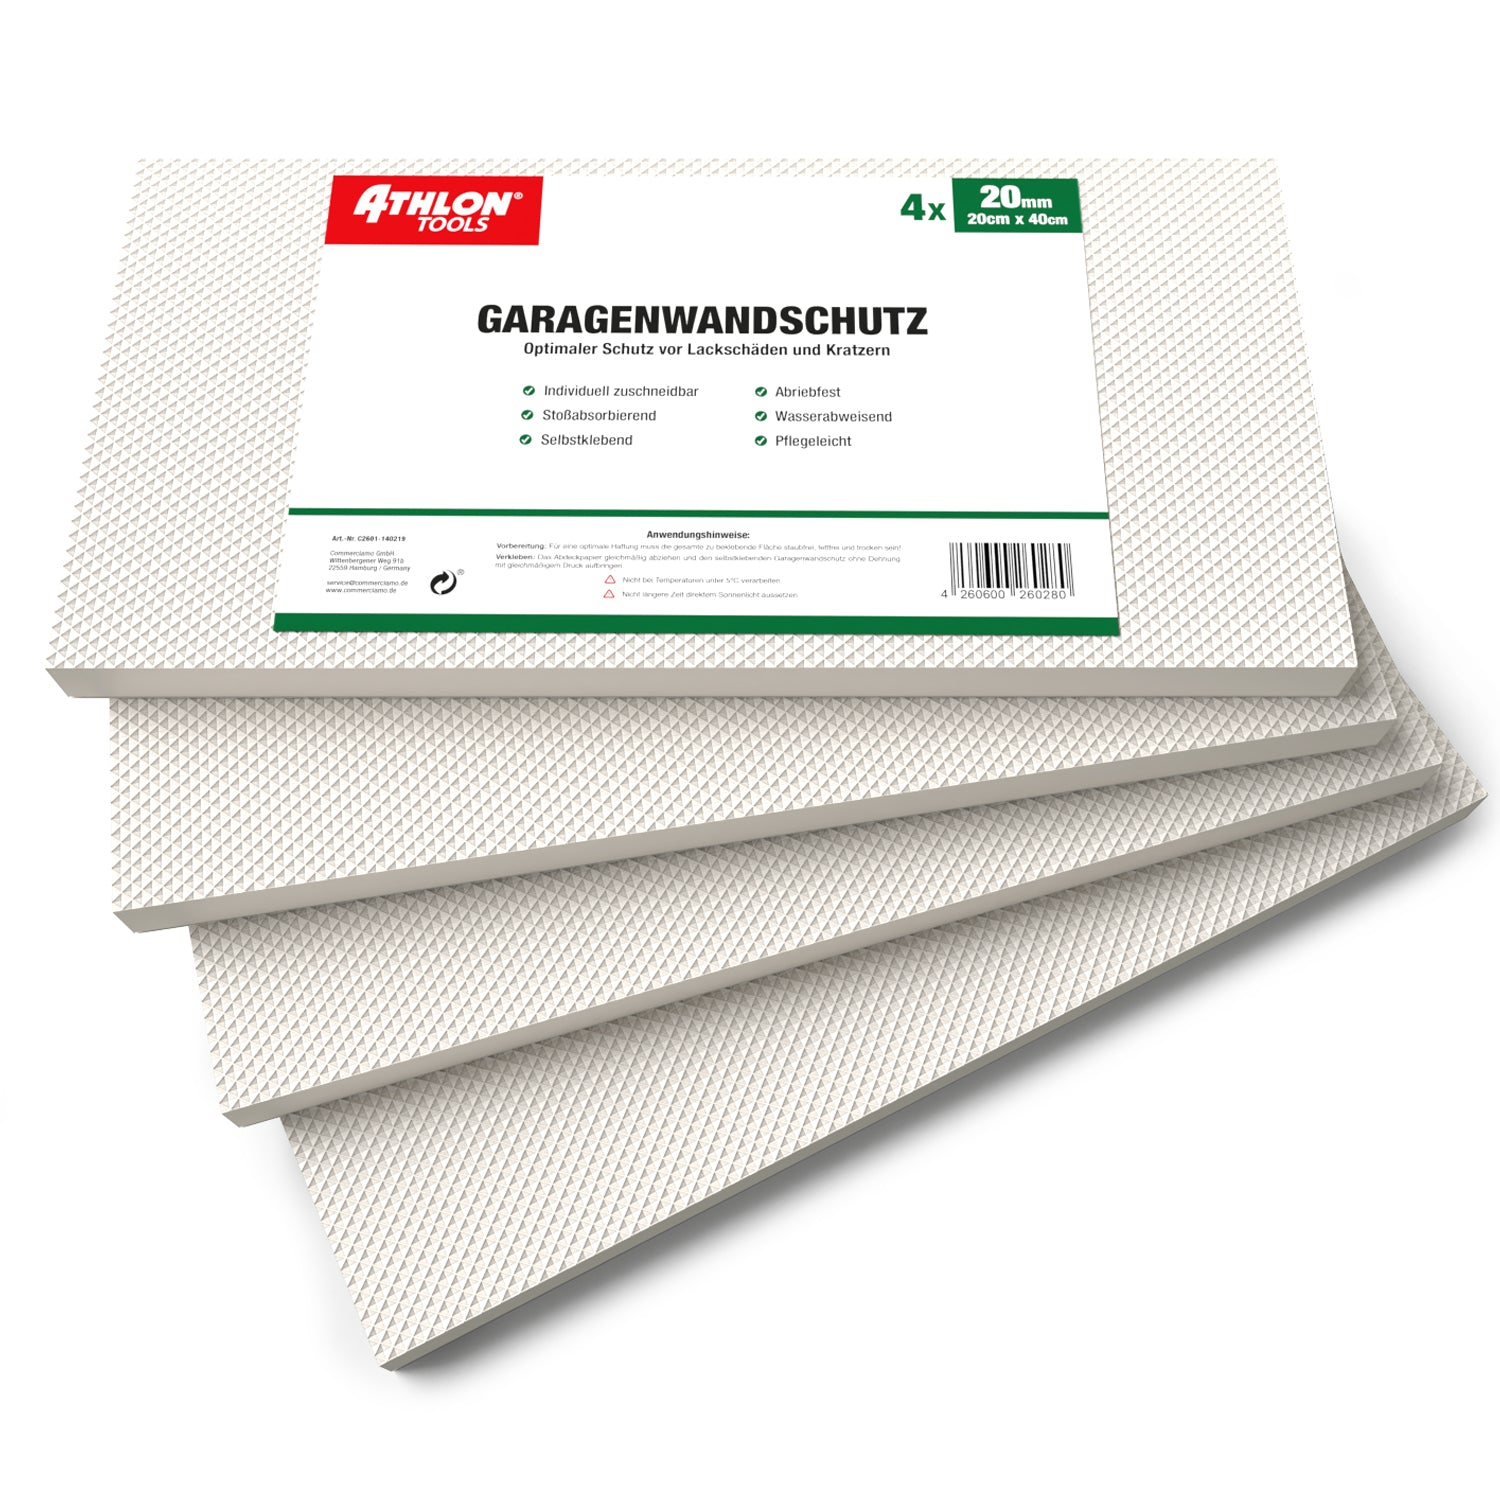 MaxProtect Garagen-Wandschutz Selbstklebend (Weiß)